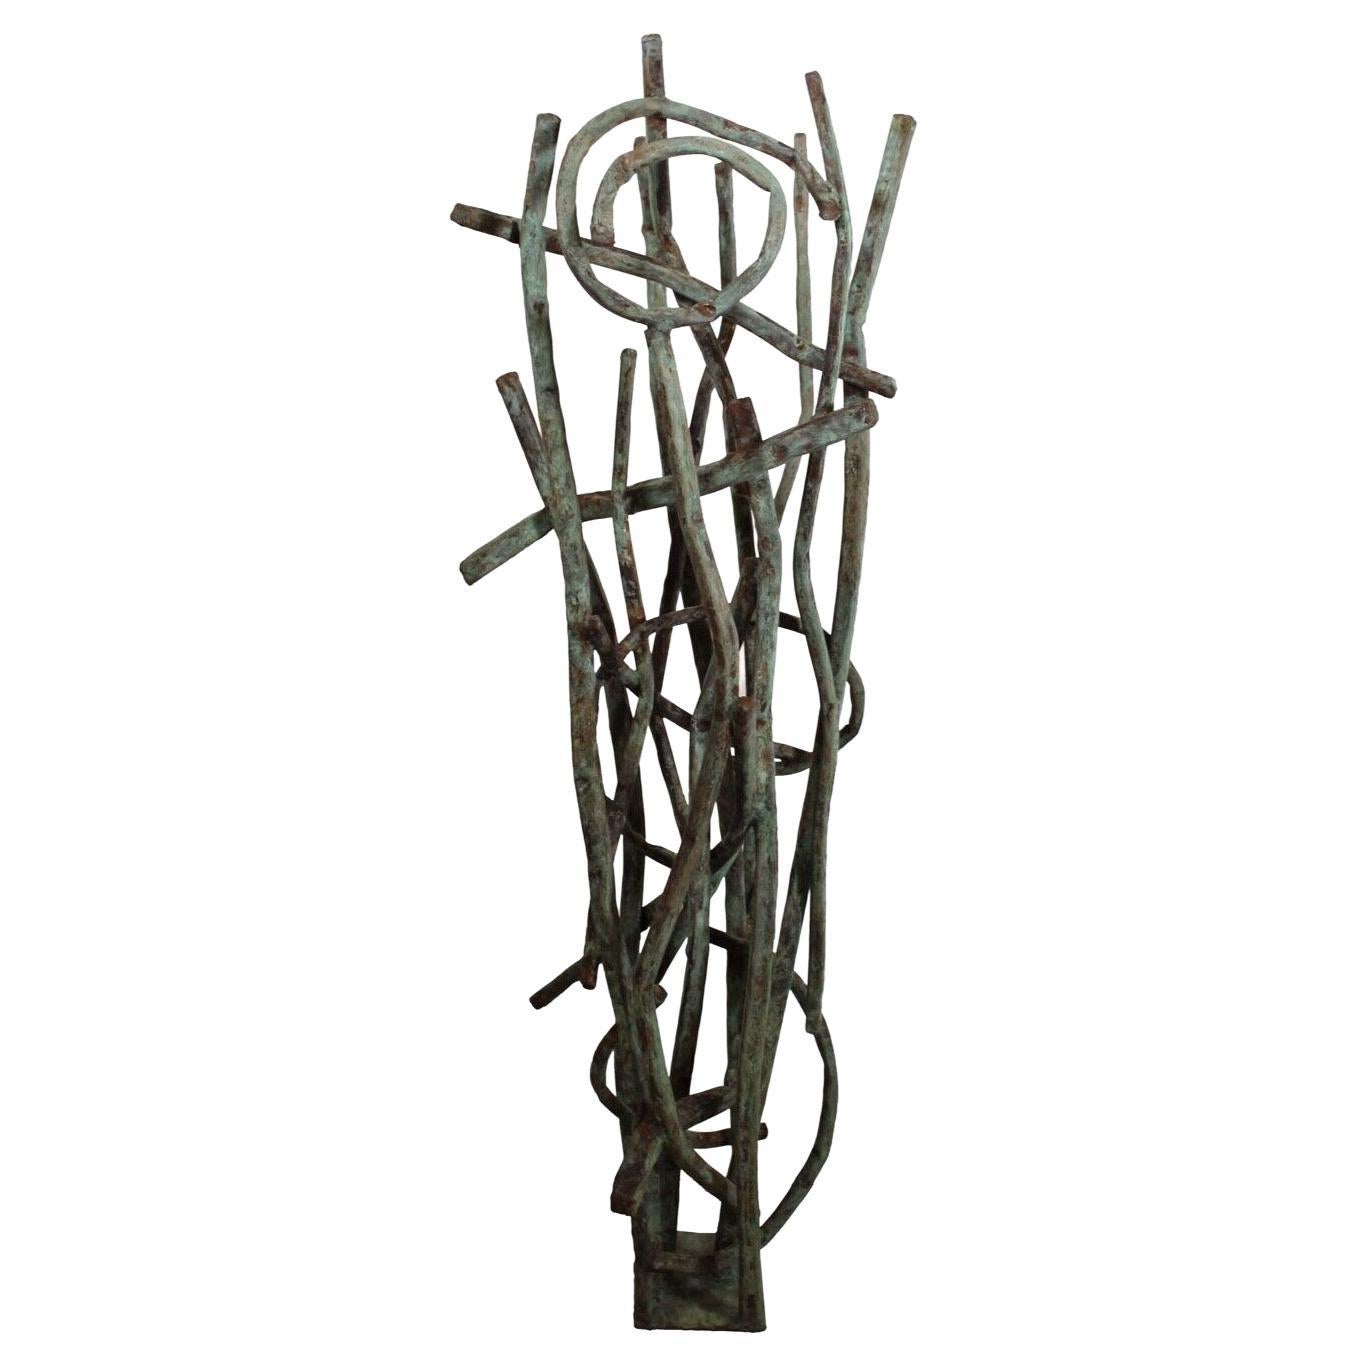 Abstrakte Kreisskulptur aus Kupfer und Metall von Robert Hansen, zeitgenössische Moderne